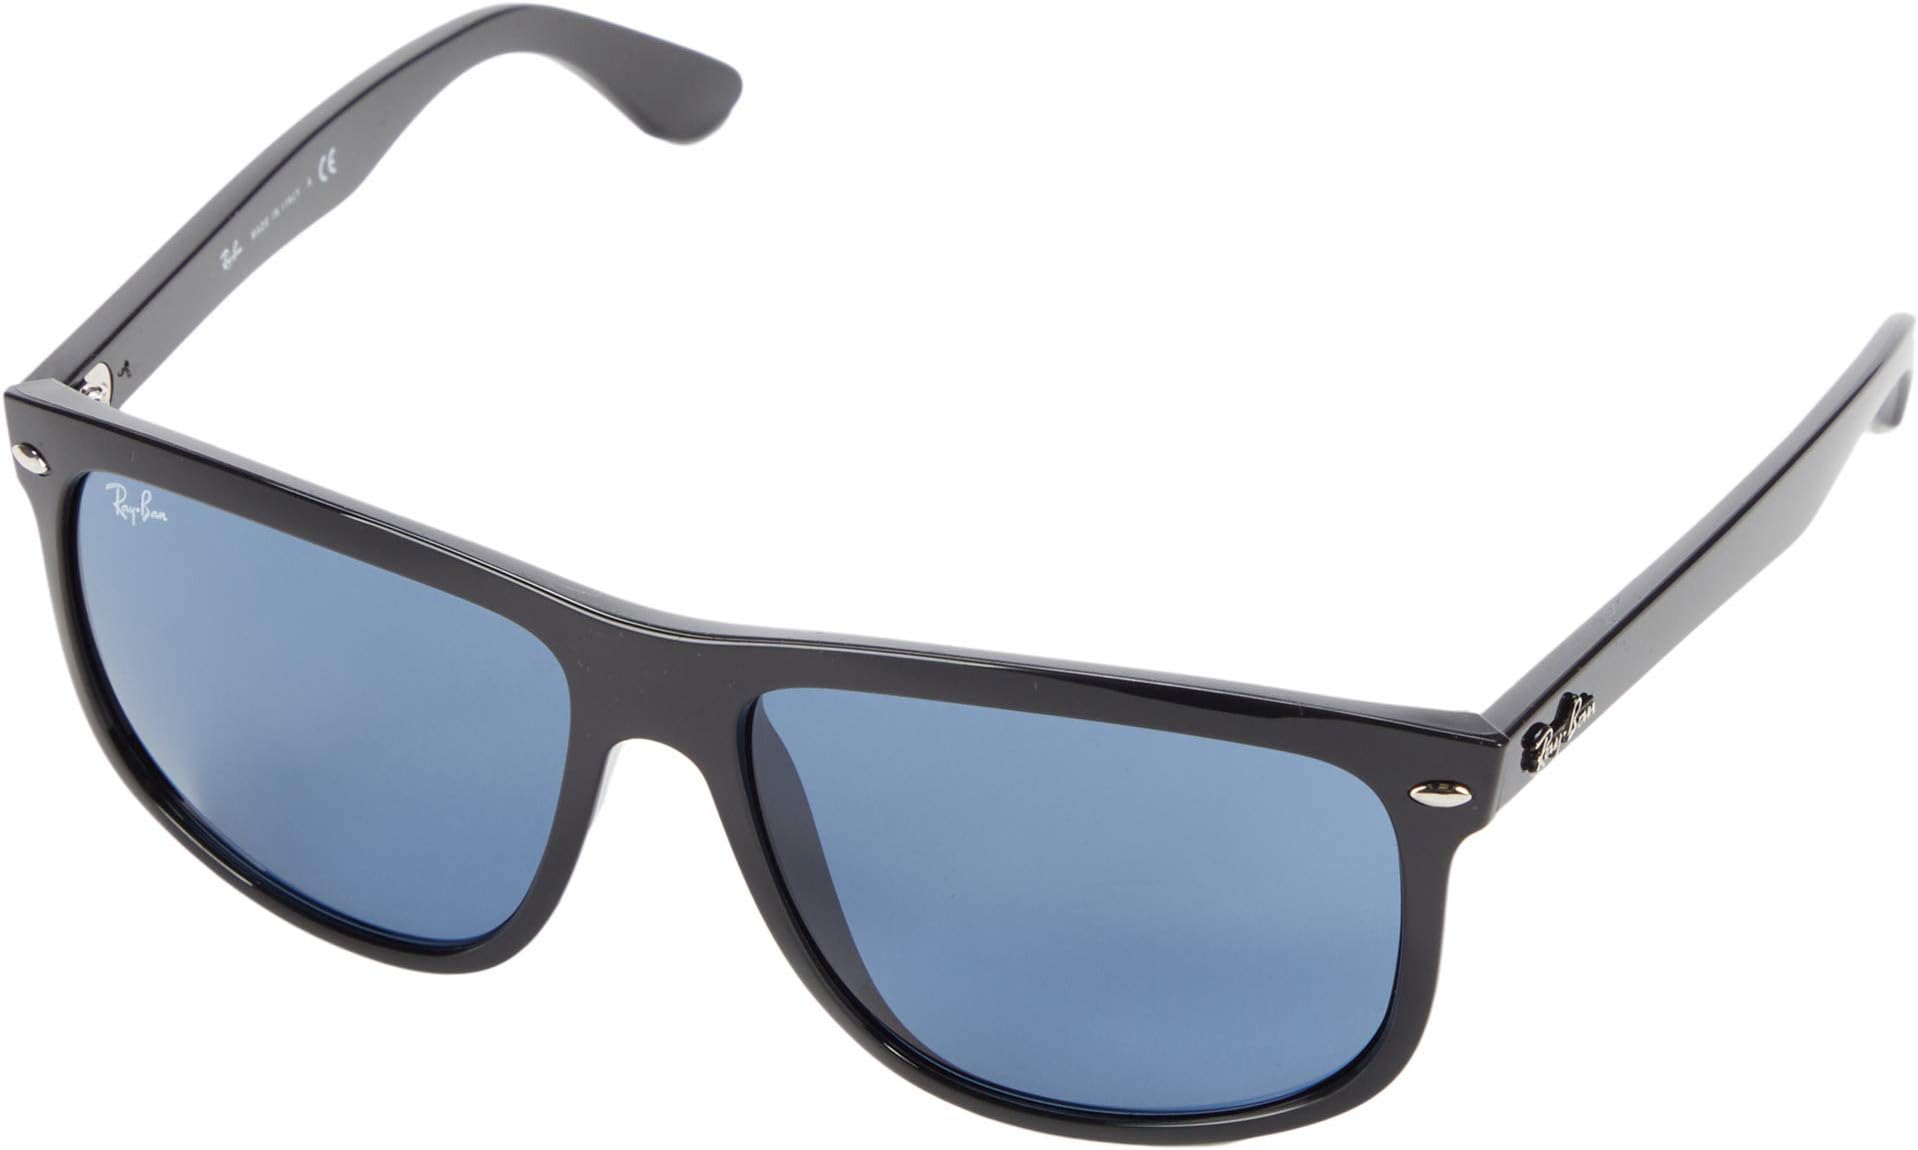 Солнцезащитные очки RB4147 Boyfriend Ray-Ban, цвет Shiny Black Frame/Dark Blue Lens